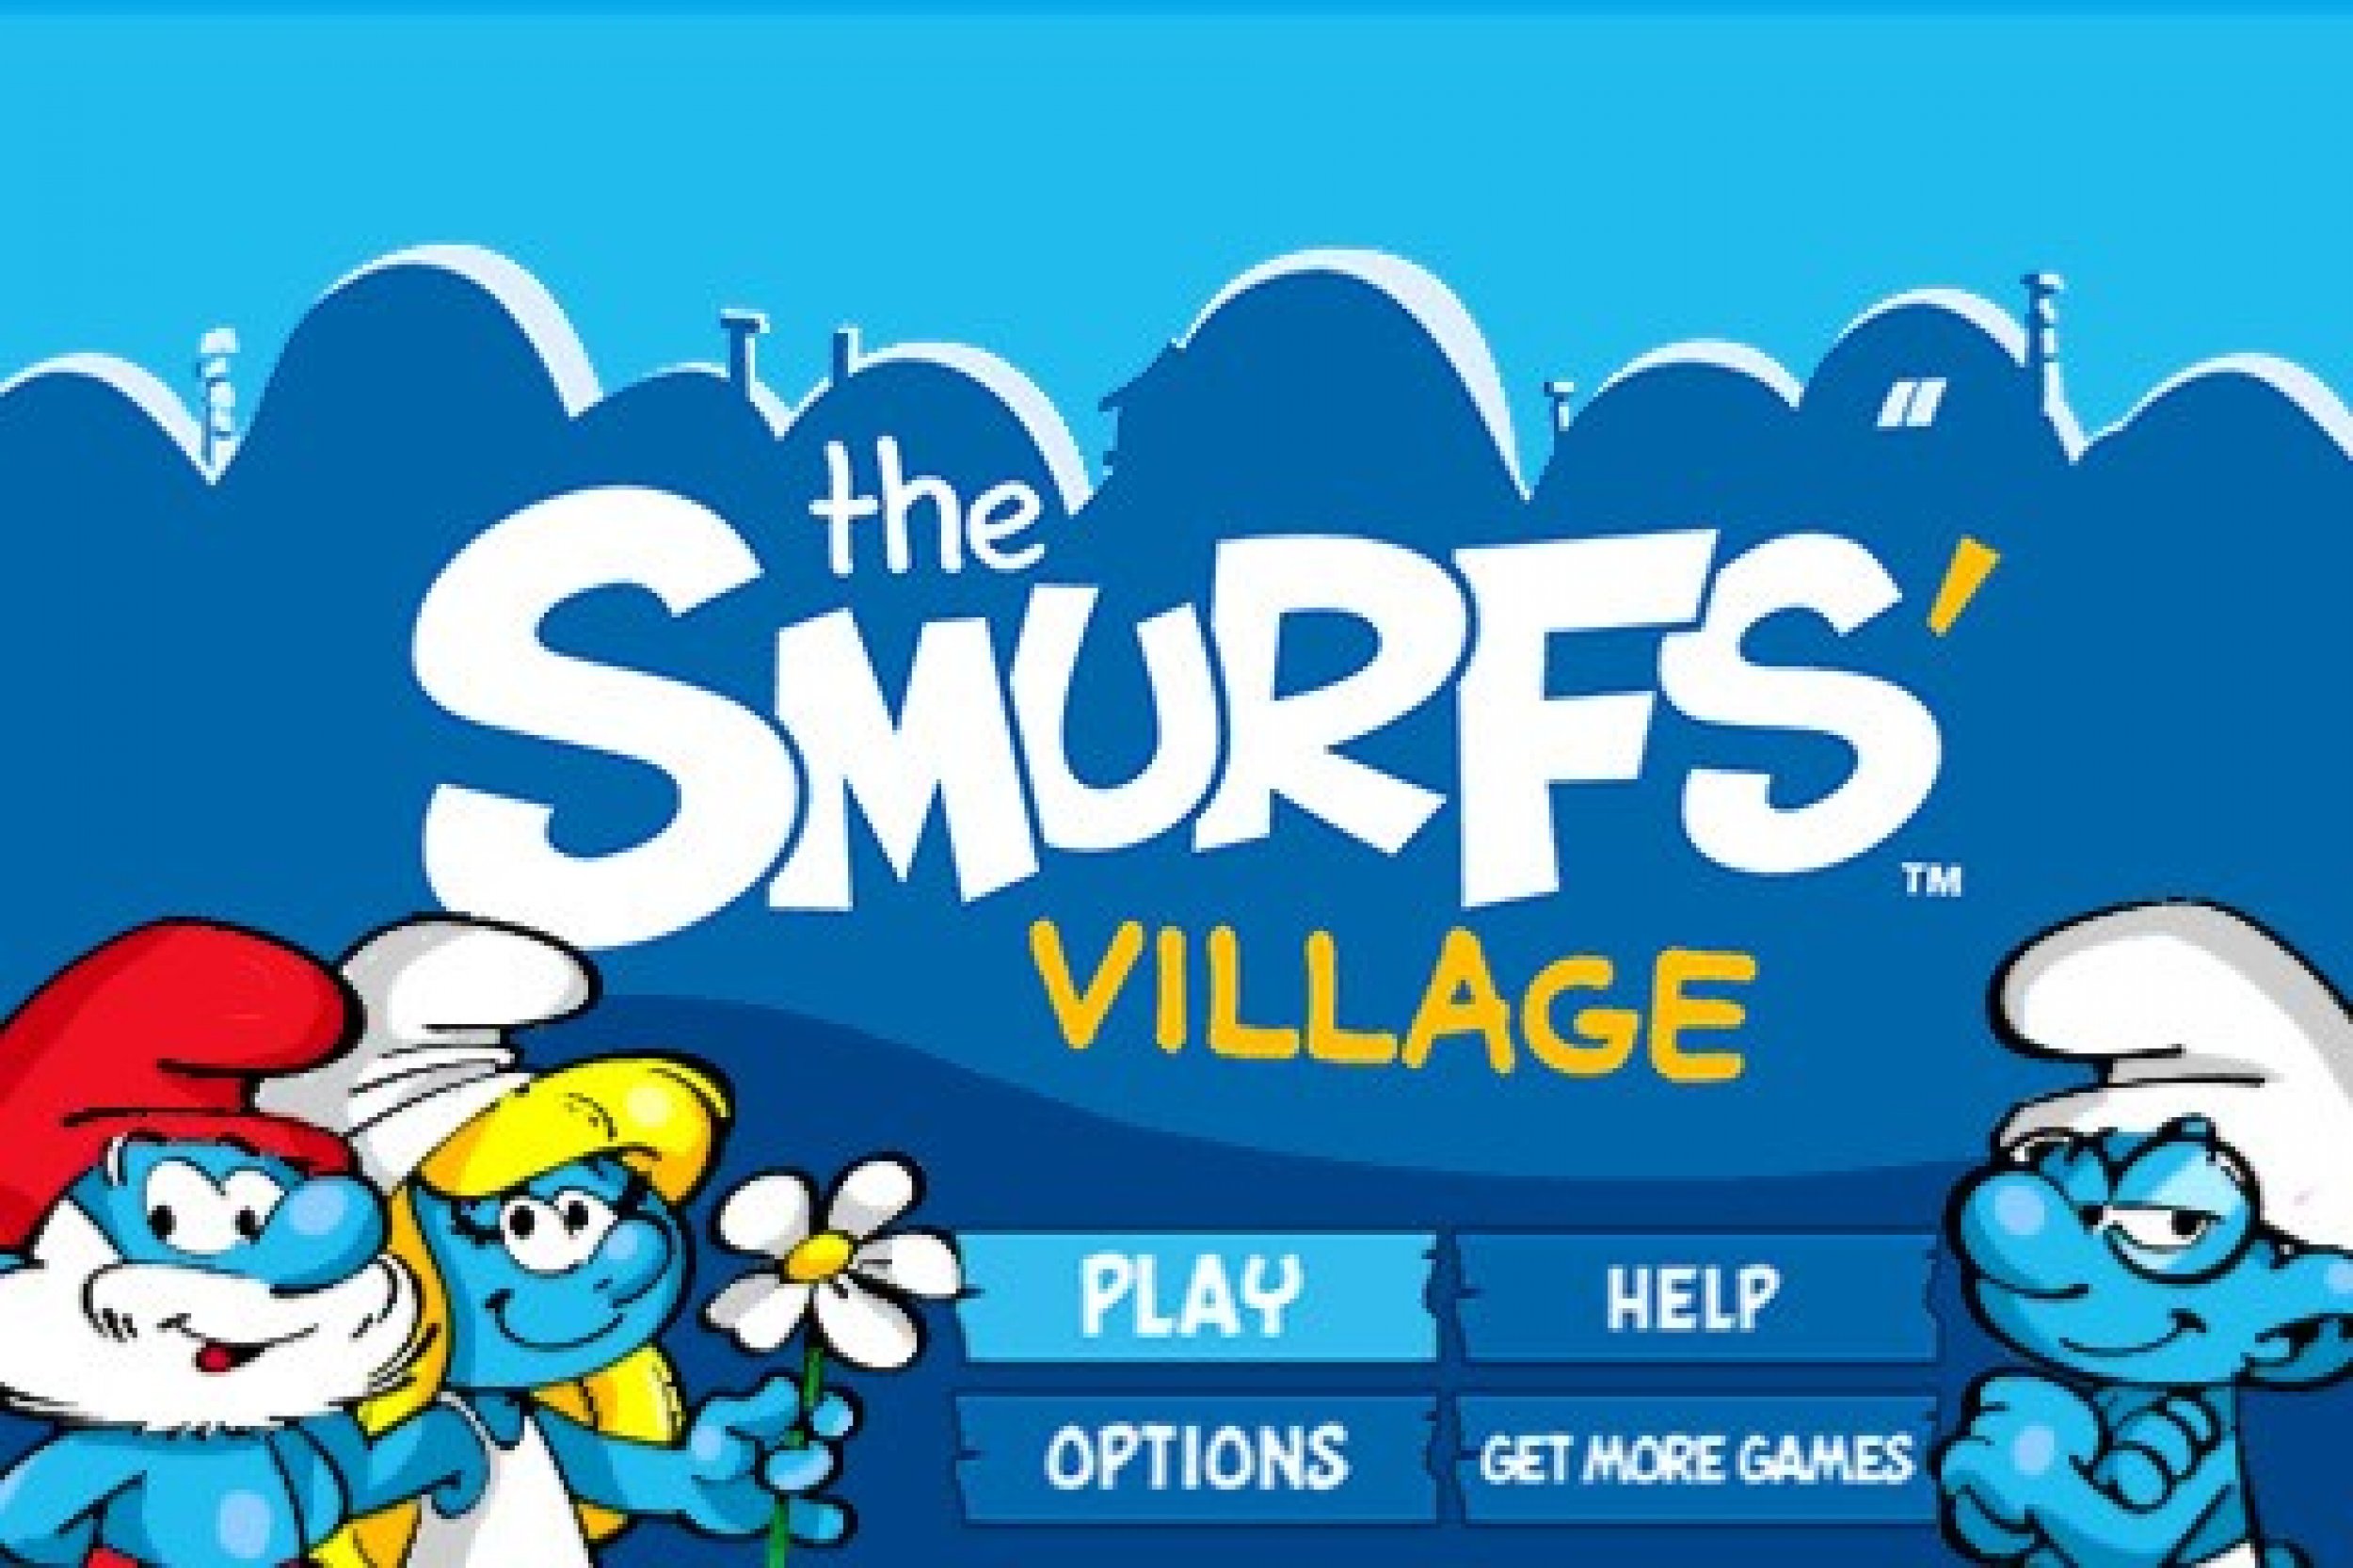 6. Smurfs039 Village -- Free